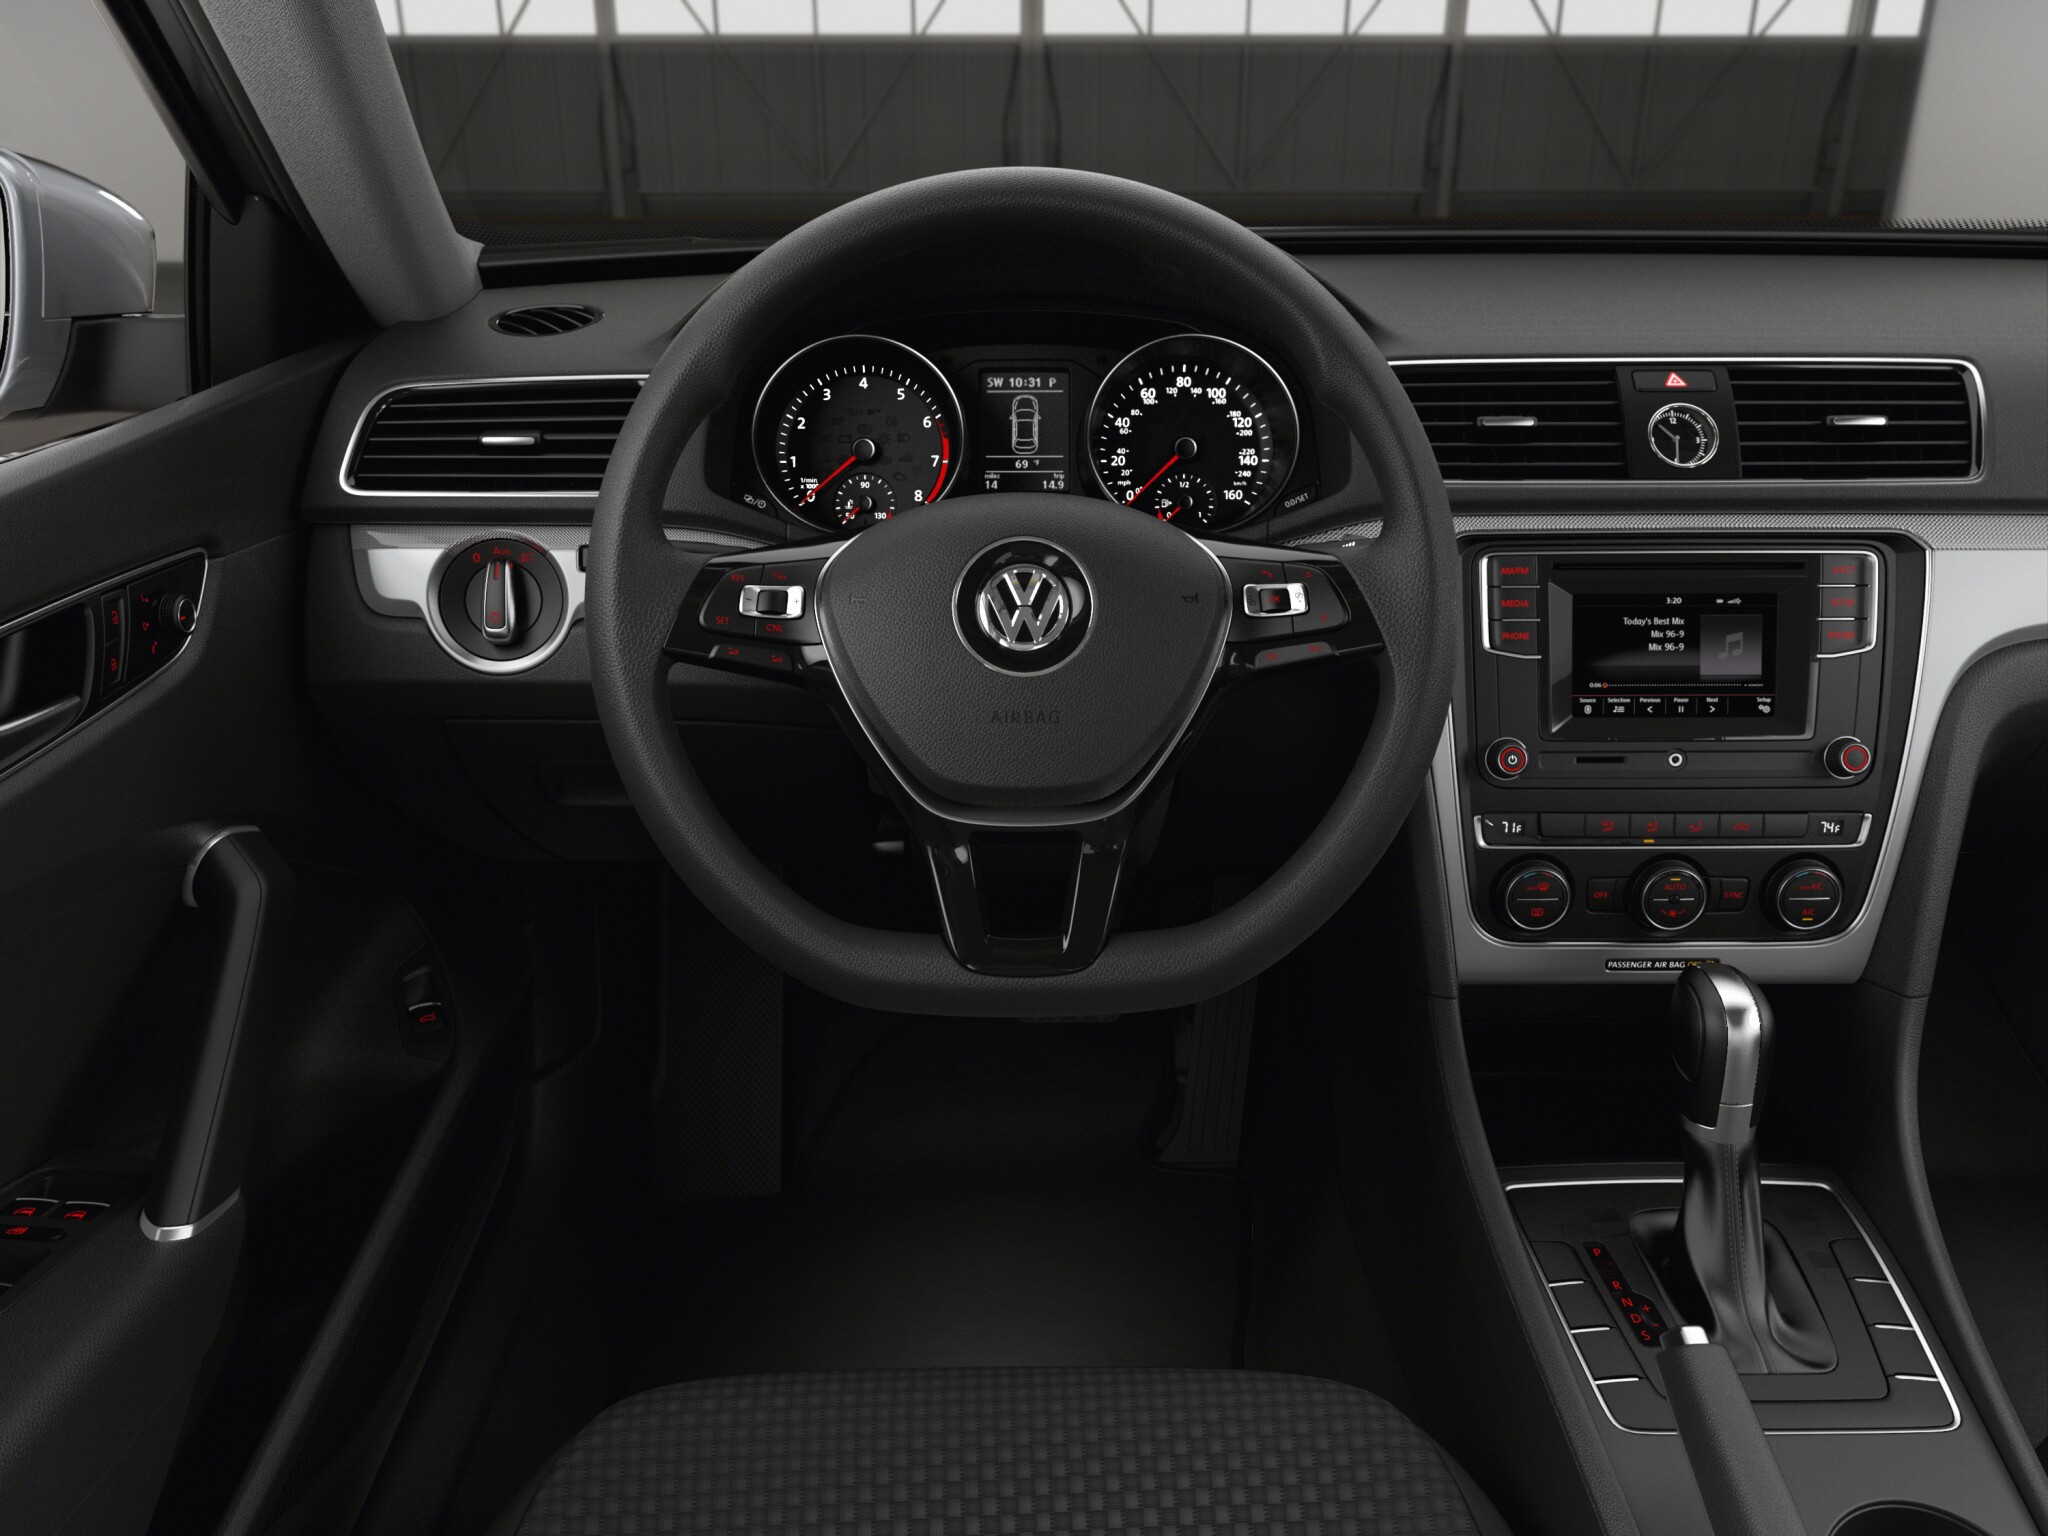 Volkswagen Passat S interior front view